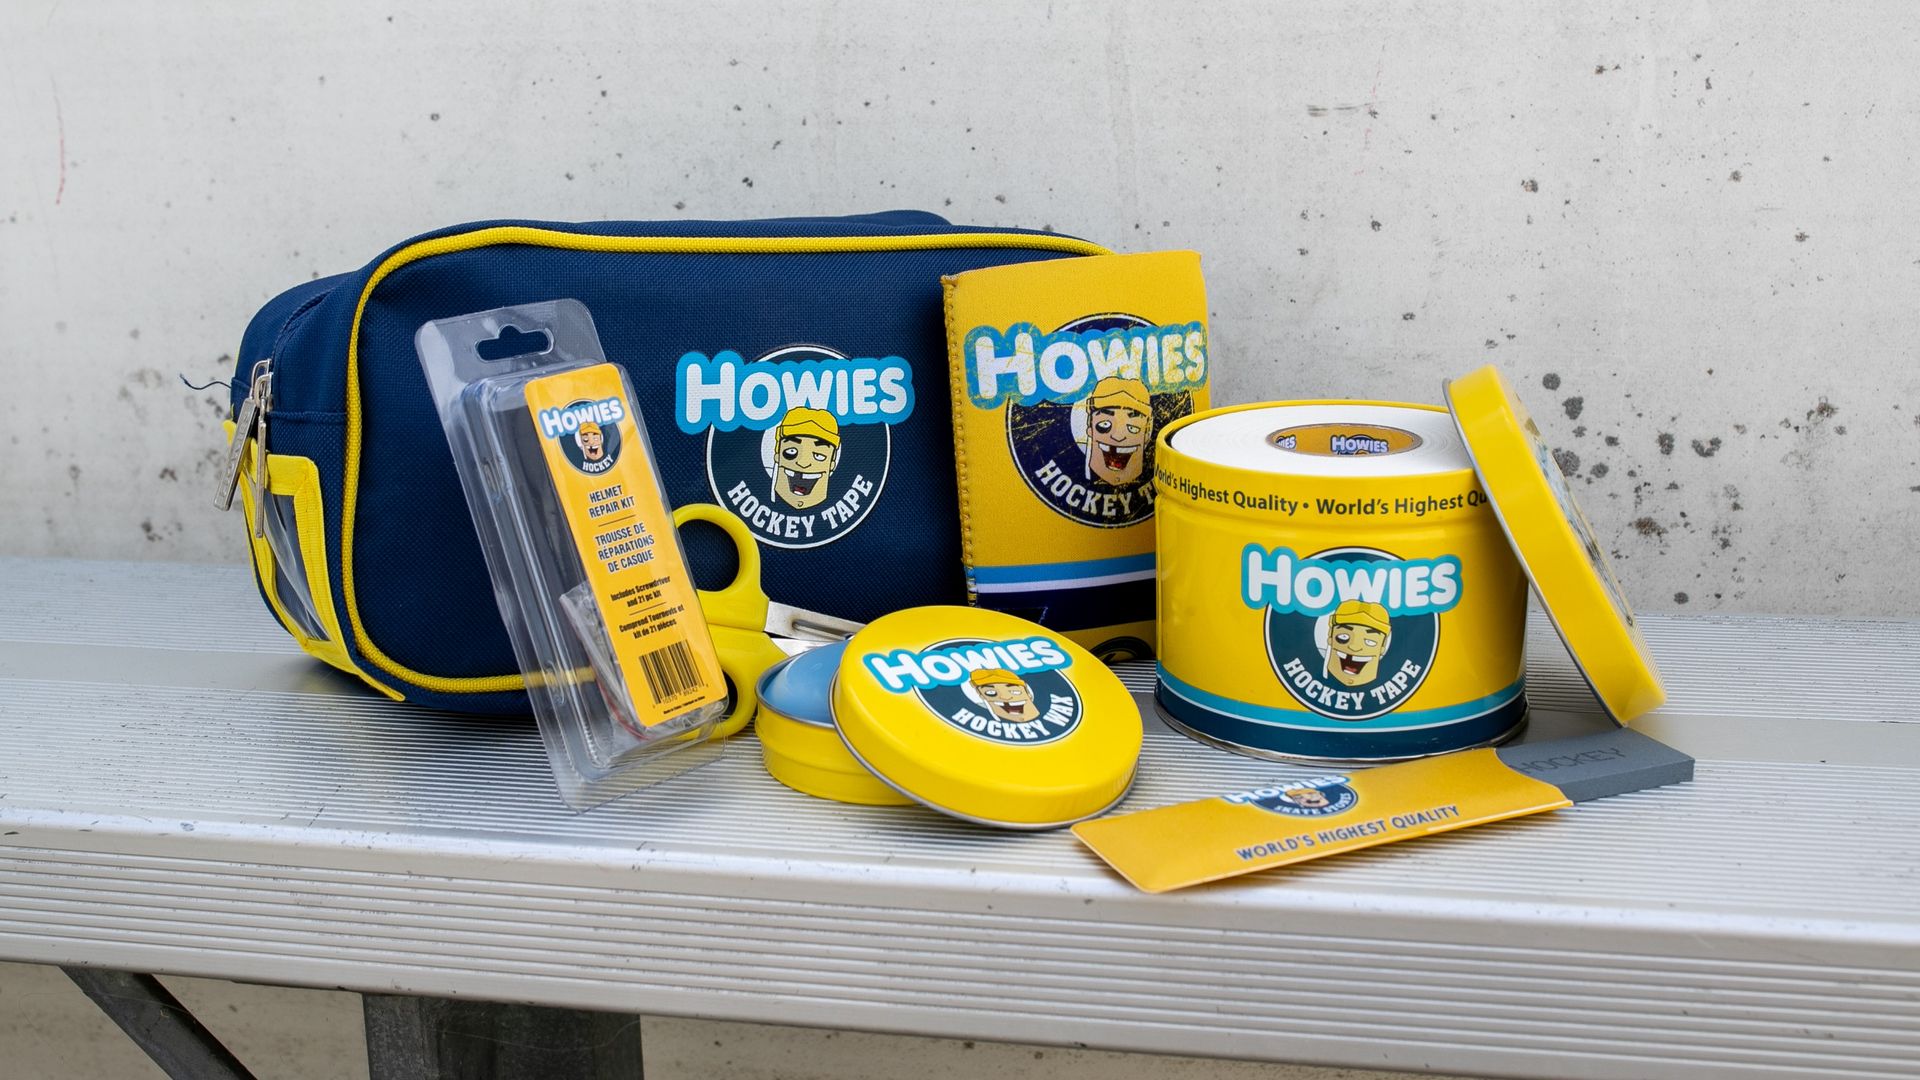 Howies Hockey Helmet Repair Kit